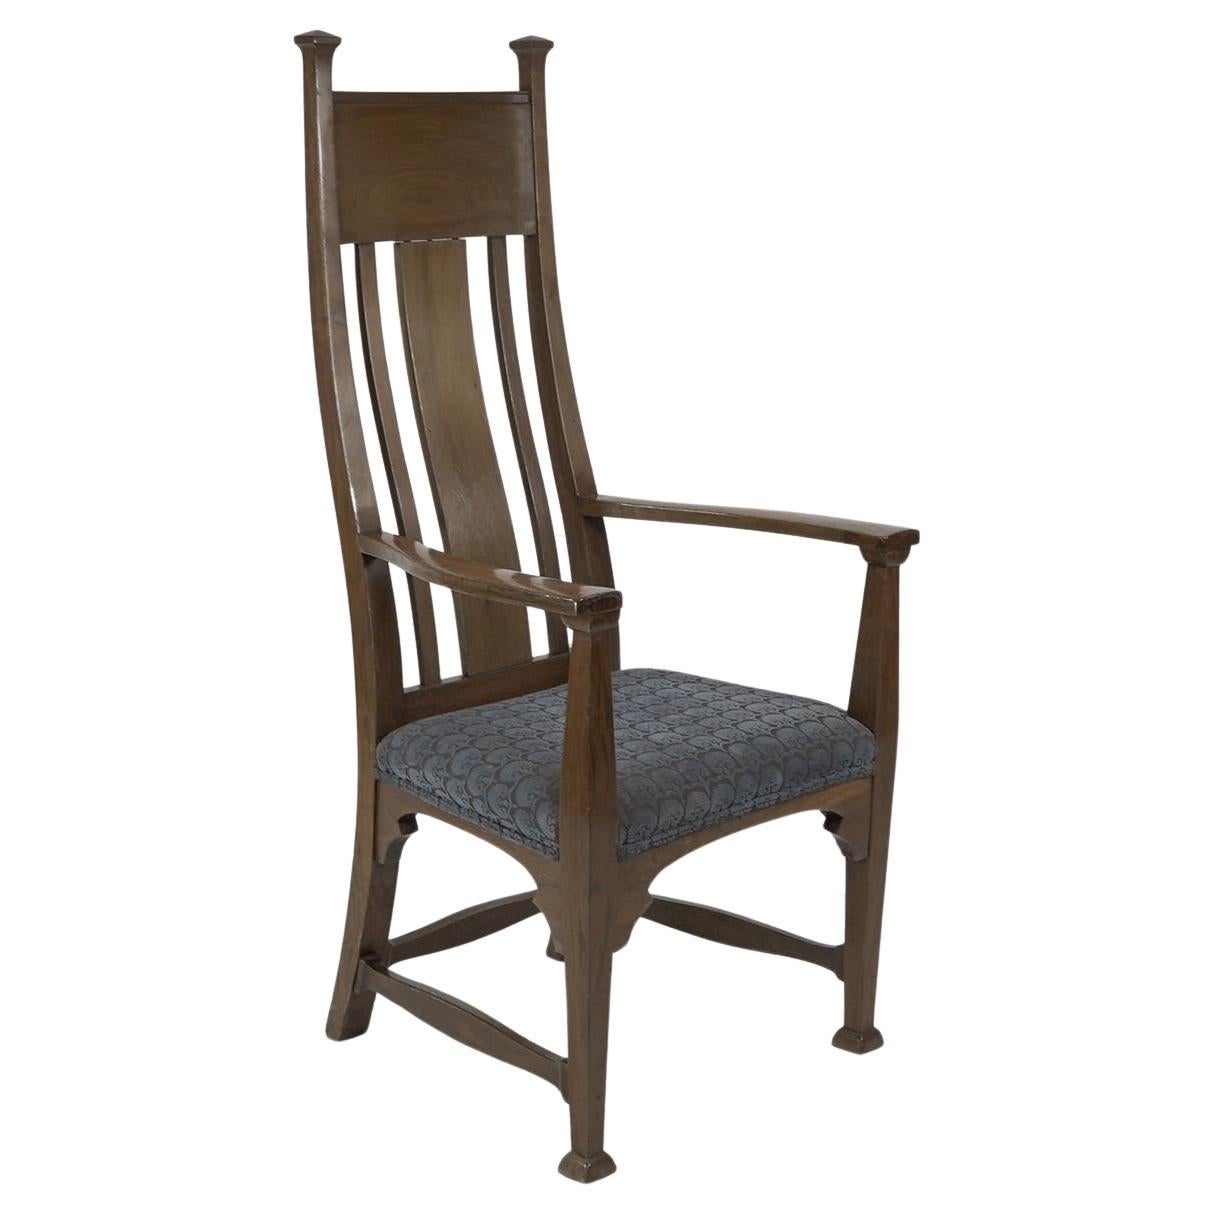 Norman & Stacey (zugeschrieben). Arts and Crafts-Sessel mit hoher Rückenlehne aus Walnussholz